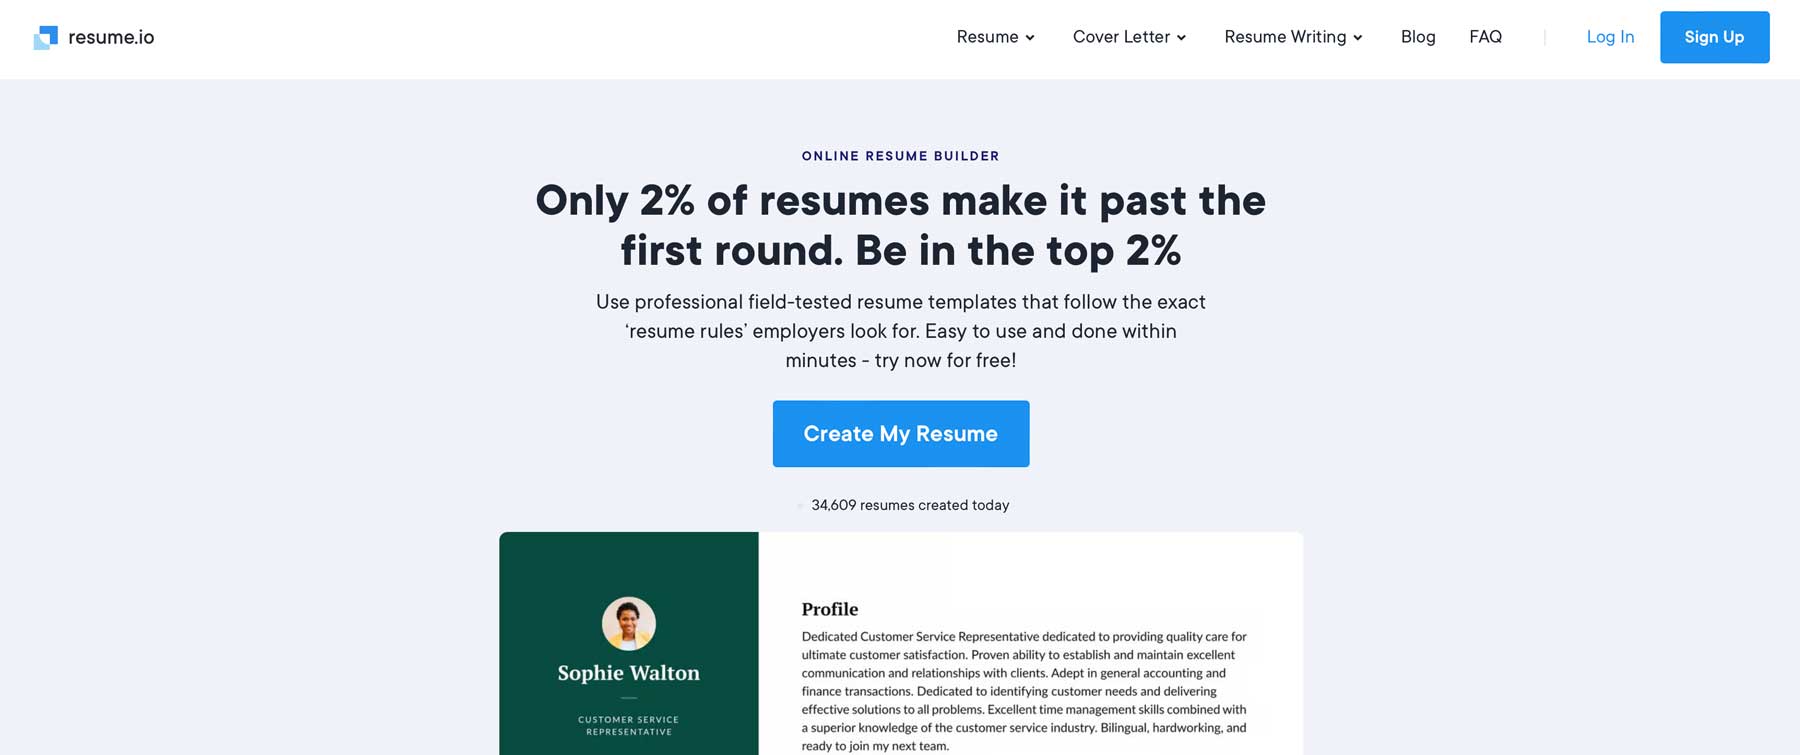 Resume.io キャリアのための最高の AI ツール